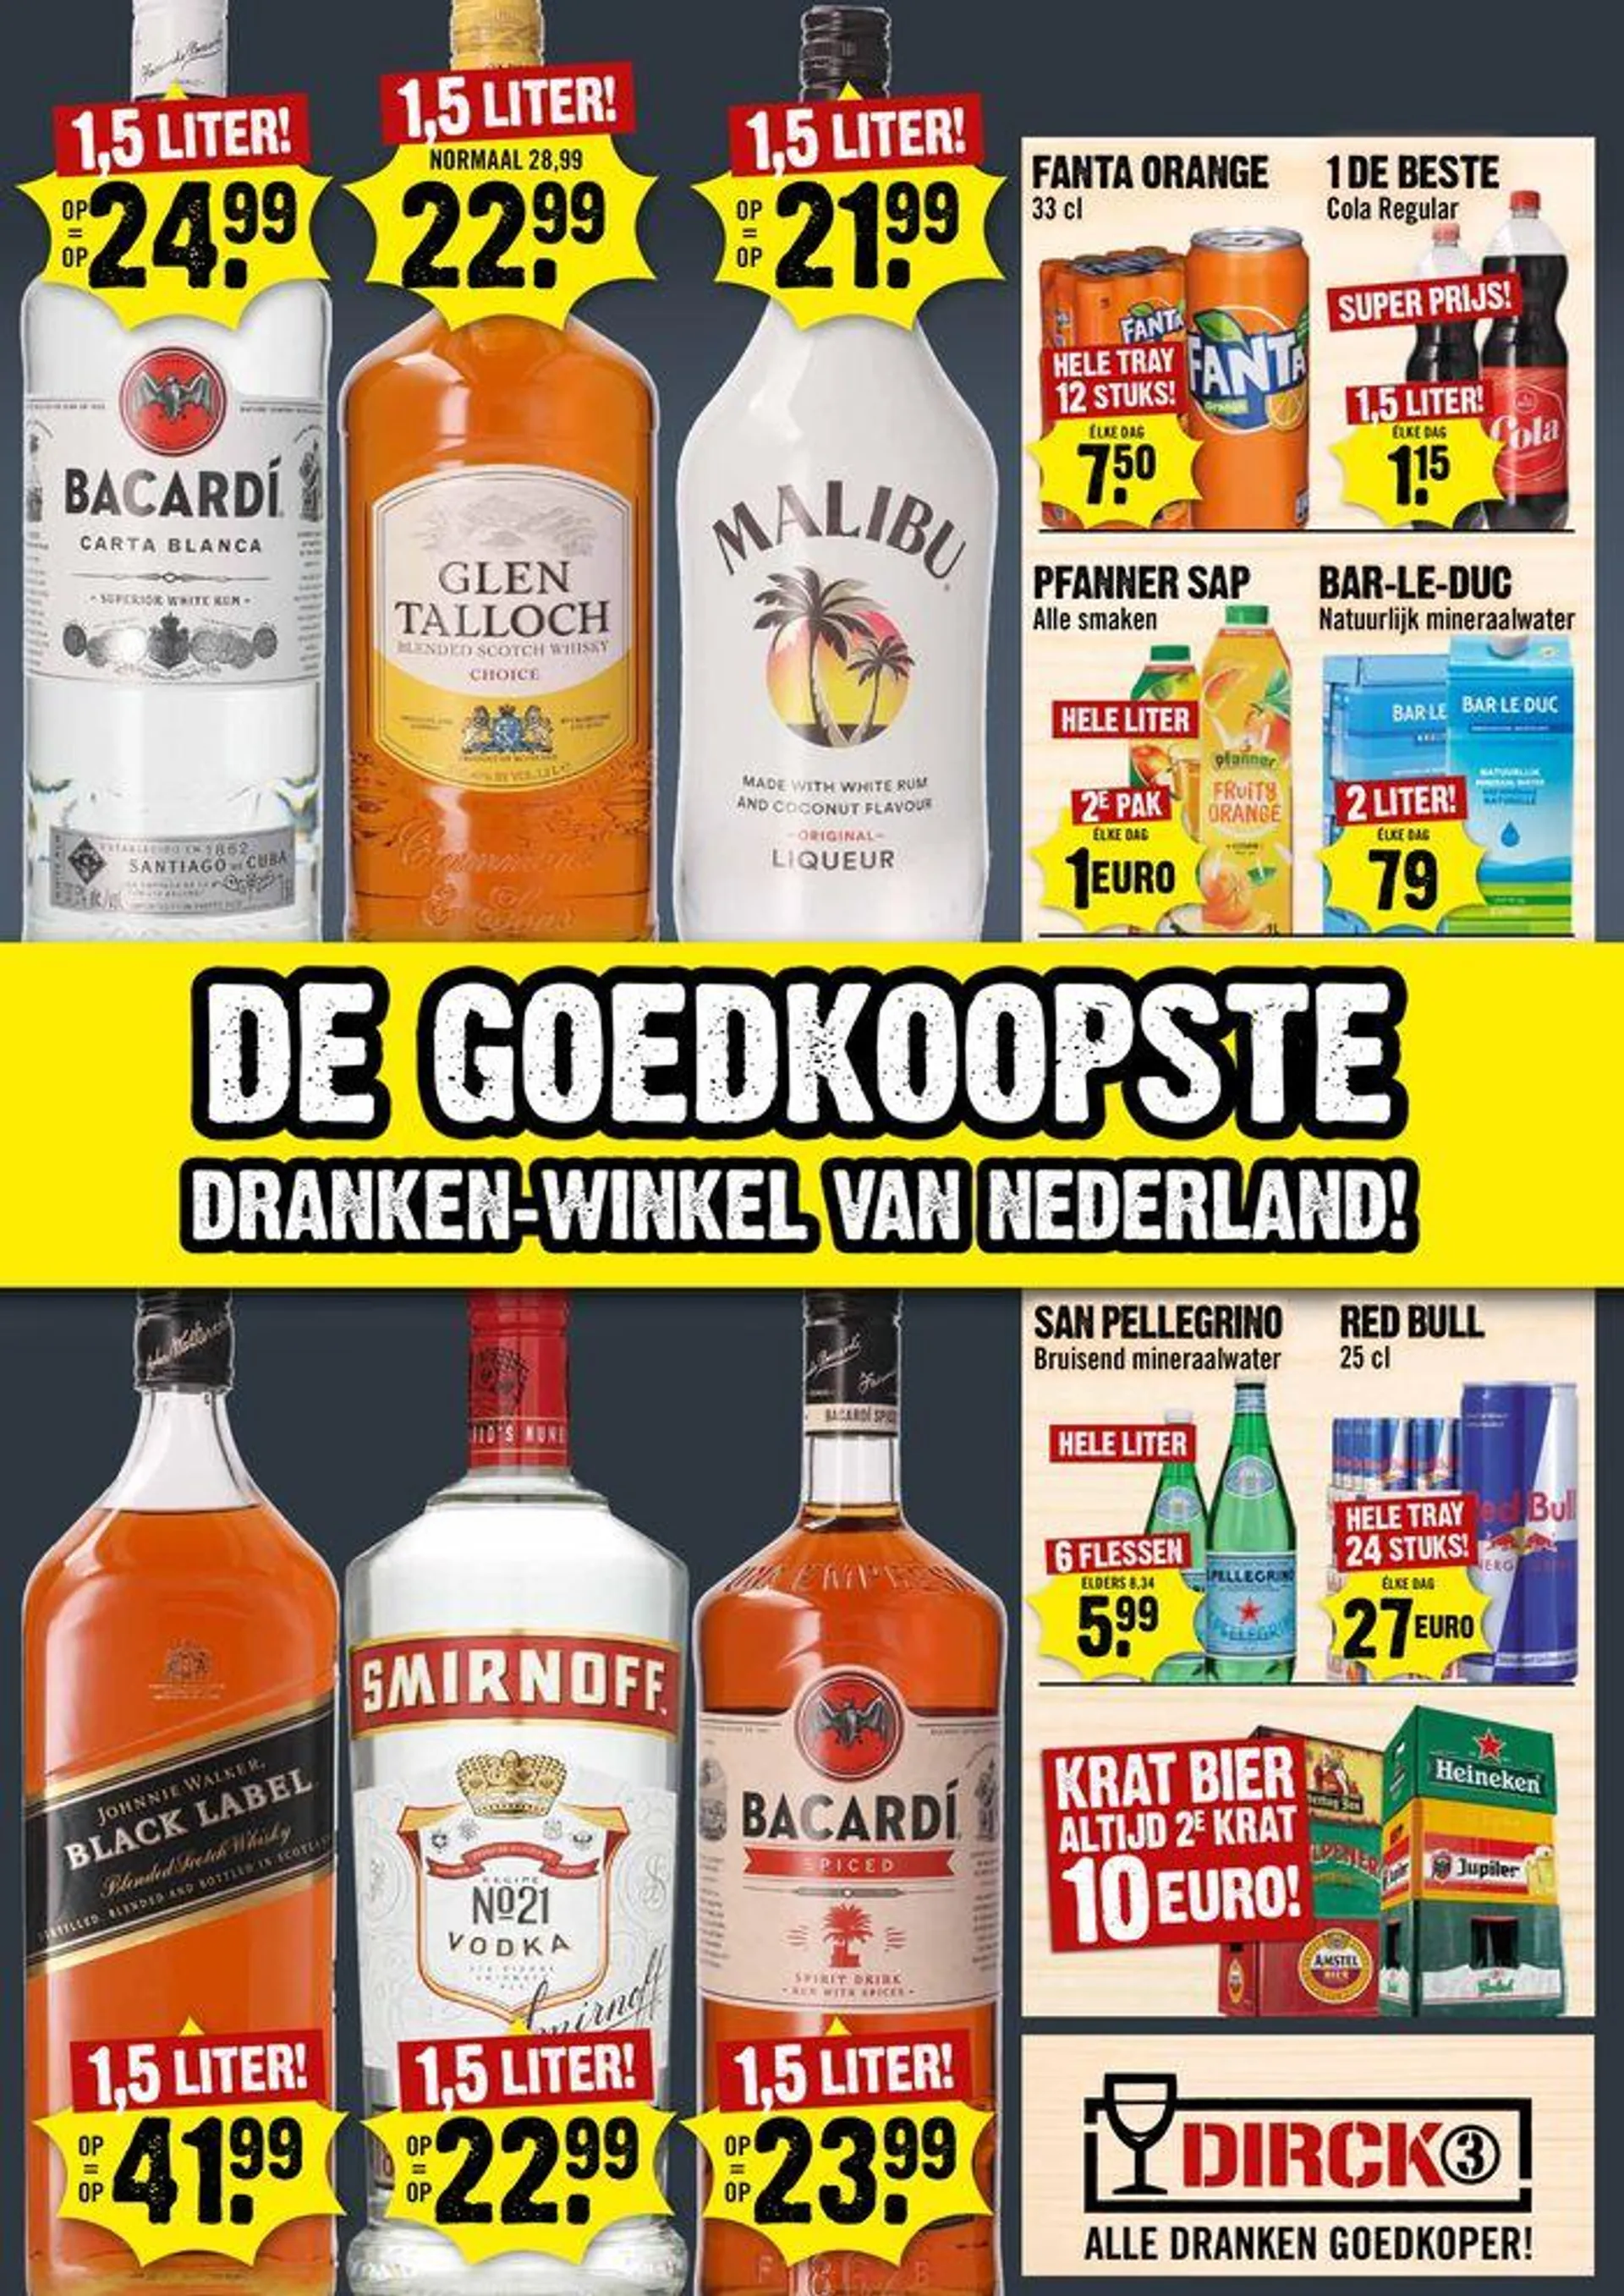 Dirck III De Goedkoopste Dranken-Winkel Van Nederland! - 1